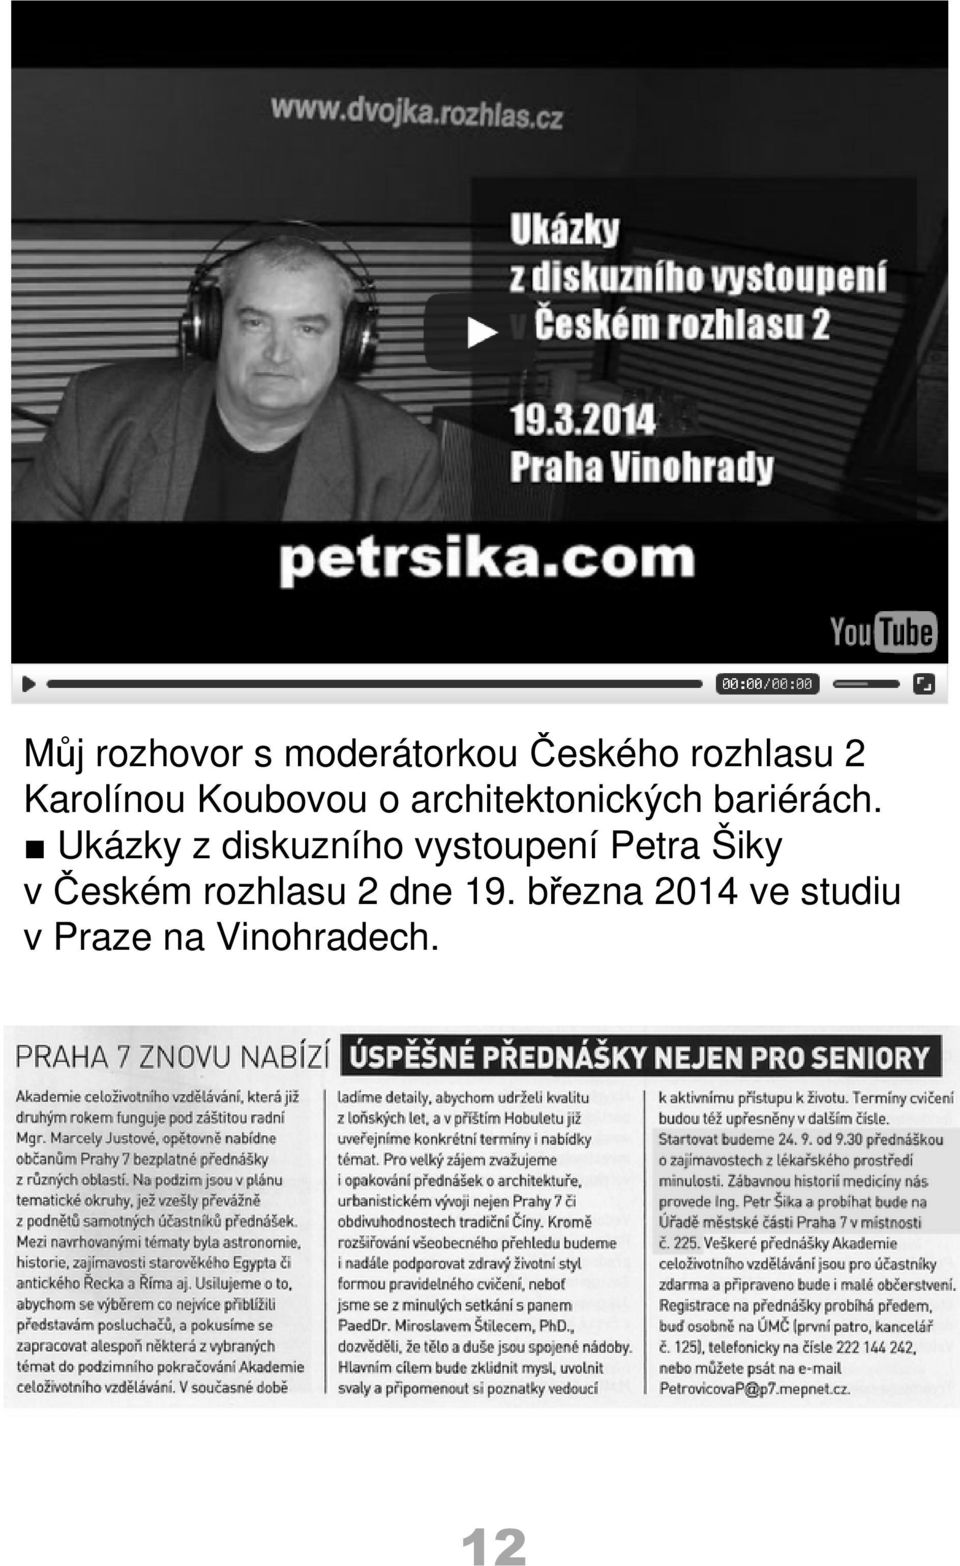 Ukázky z diskuzního vystoupení Petra Šiky v Českém